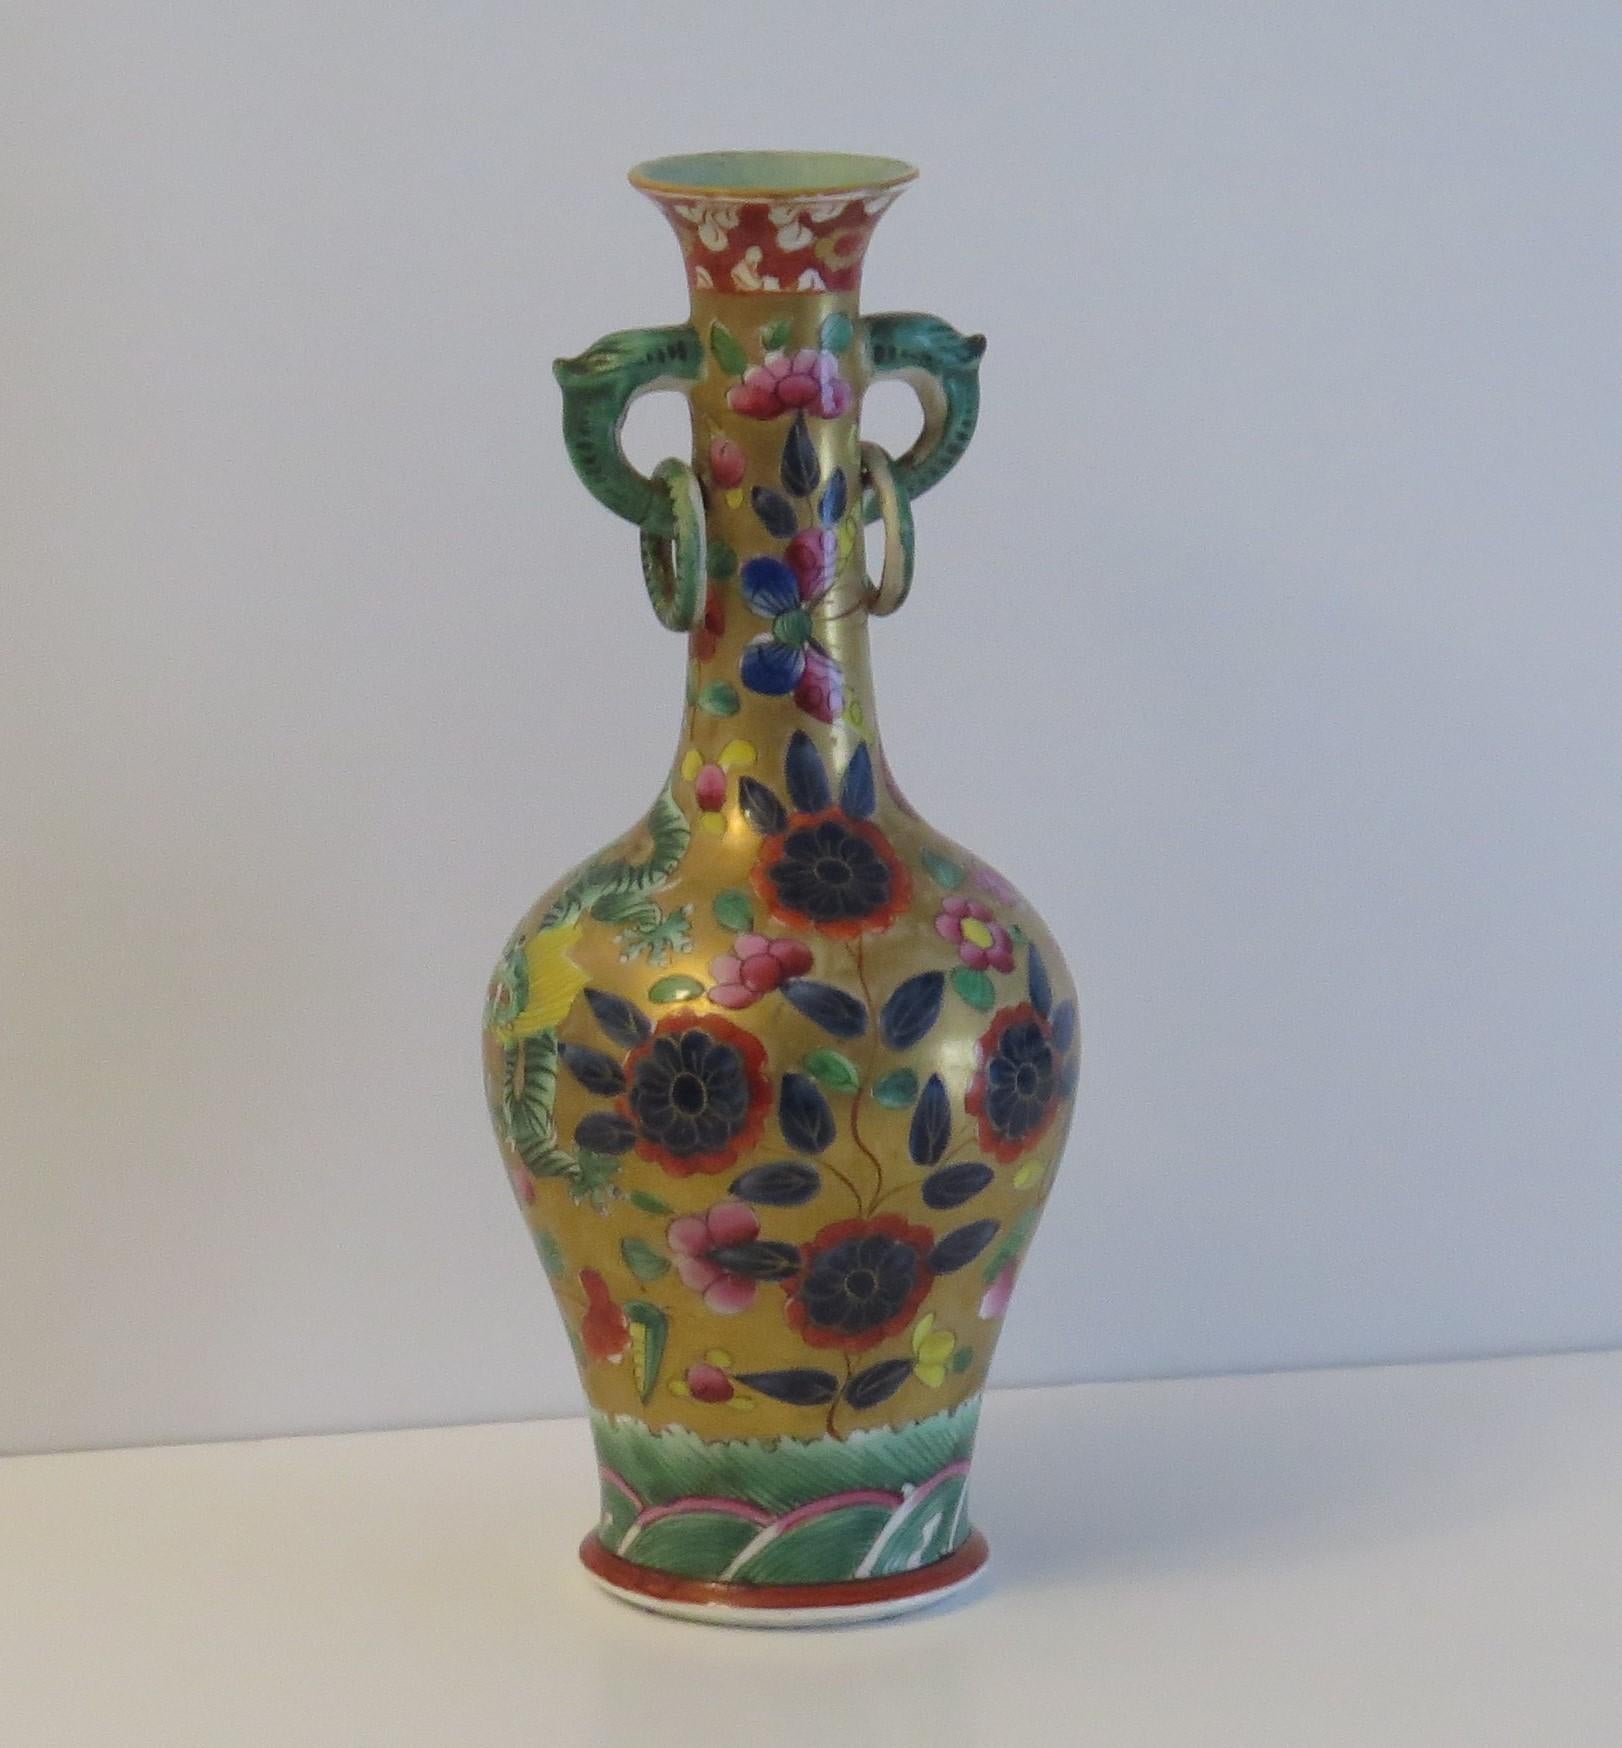 Es handelt sich um eine sehr seltene Eisensteinvase im chinesischen Stil, die von der Mason's-Fabrik im frühen 19. Jahrhundert hergestellt und mit einem farbigen Drachenmuster handbemalt wurde.

Sowohl die Vasenform als auch das Muster sind sehr